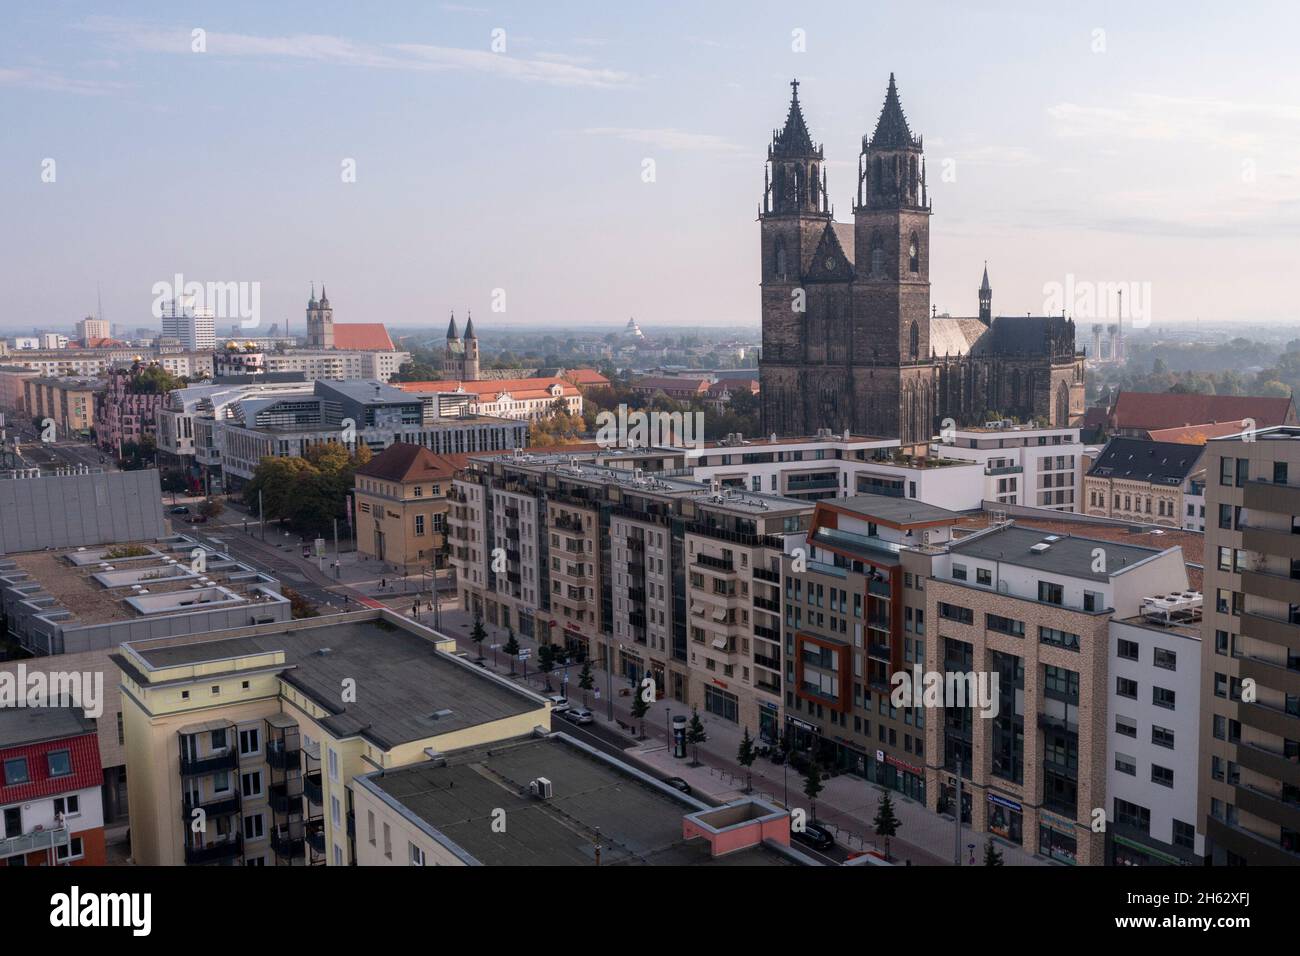 germania, sassonia-anhalt, magdeburg, centro città con cattedrale, monastero ed edifici commerciali Foto Stock